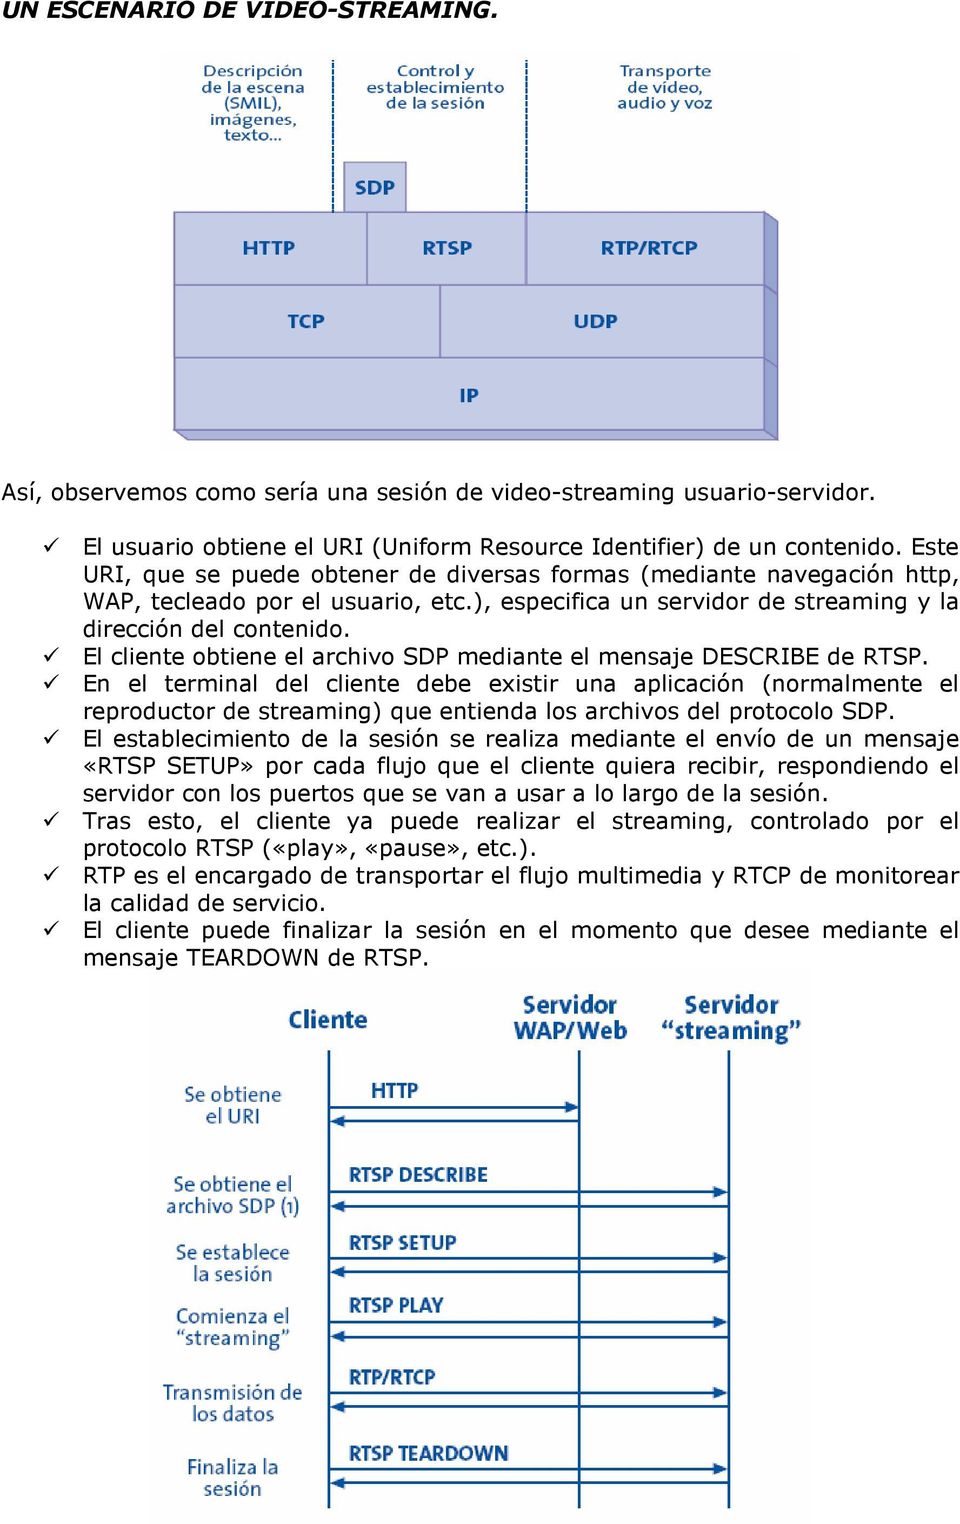 El cliente obtiene el archivo SDP mediante el mensaje DESCRIBE de RTSP.